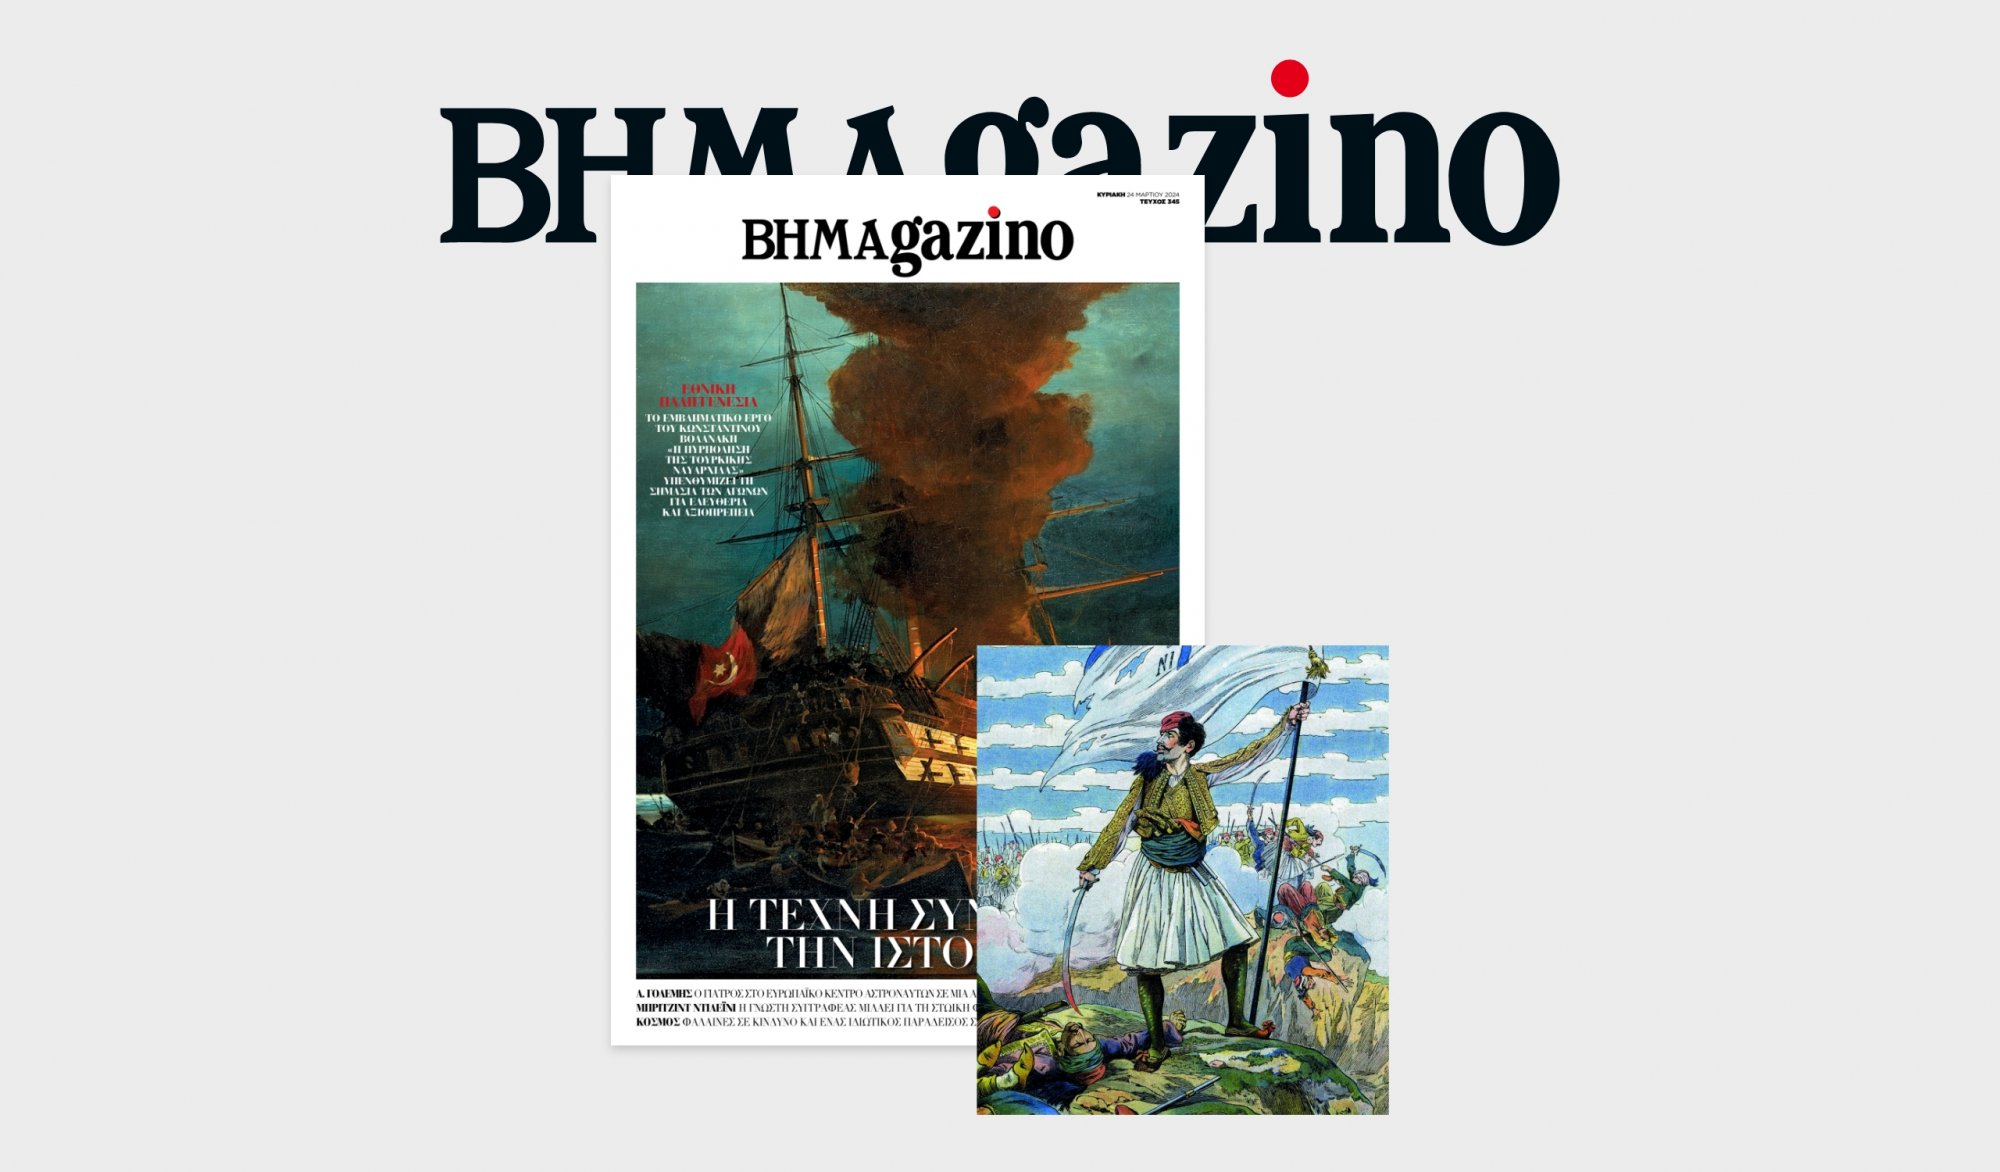 Το «BHMAgazino» με το εμβληματικό έργο του Κωνσταντίνου Βολανάκη «Η πυρπόληση της τουρκικής ναυαρχίδας» στο εξώφυλλο